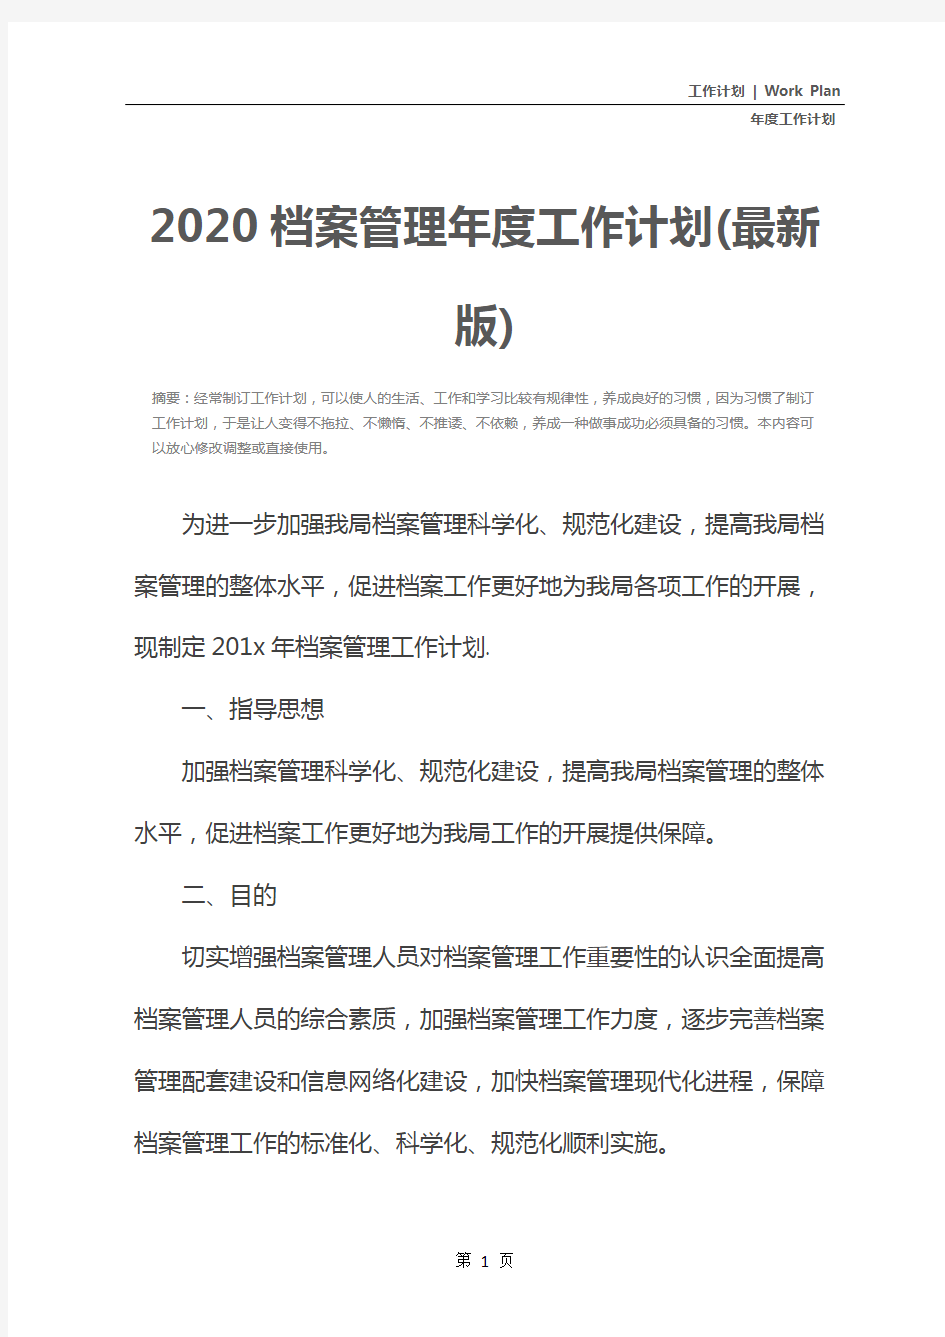 2020档案管理年度工作计划(最新版)